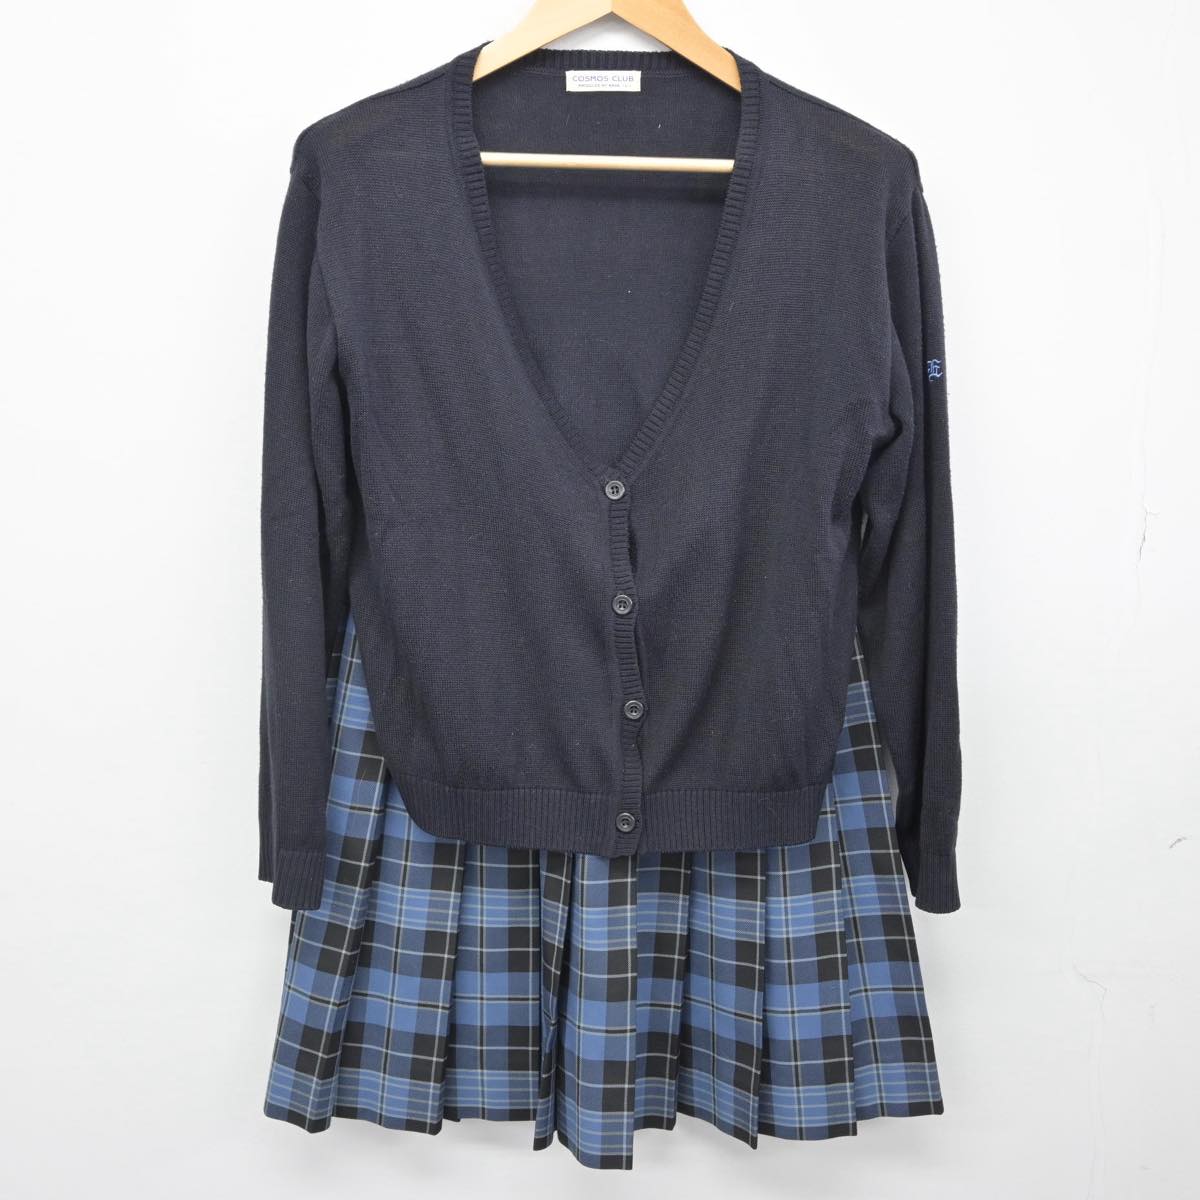 愛知県私立栄徳高校 男子 制服 美品 - スーツ